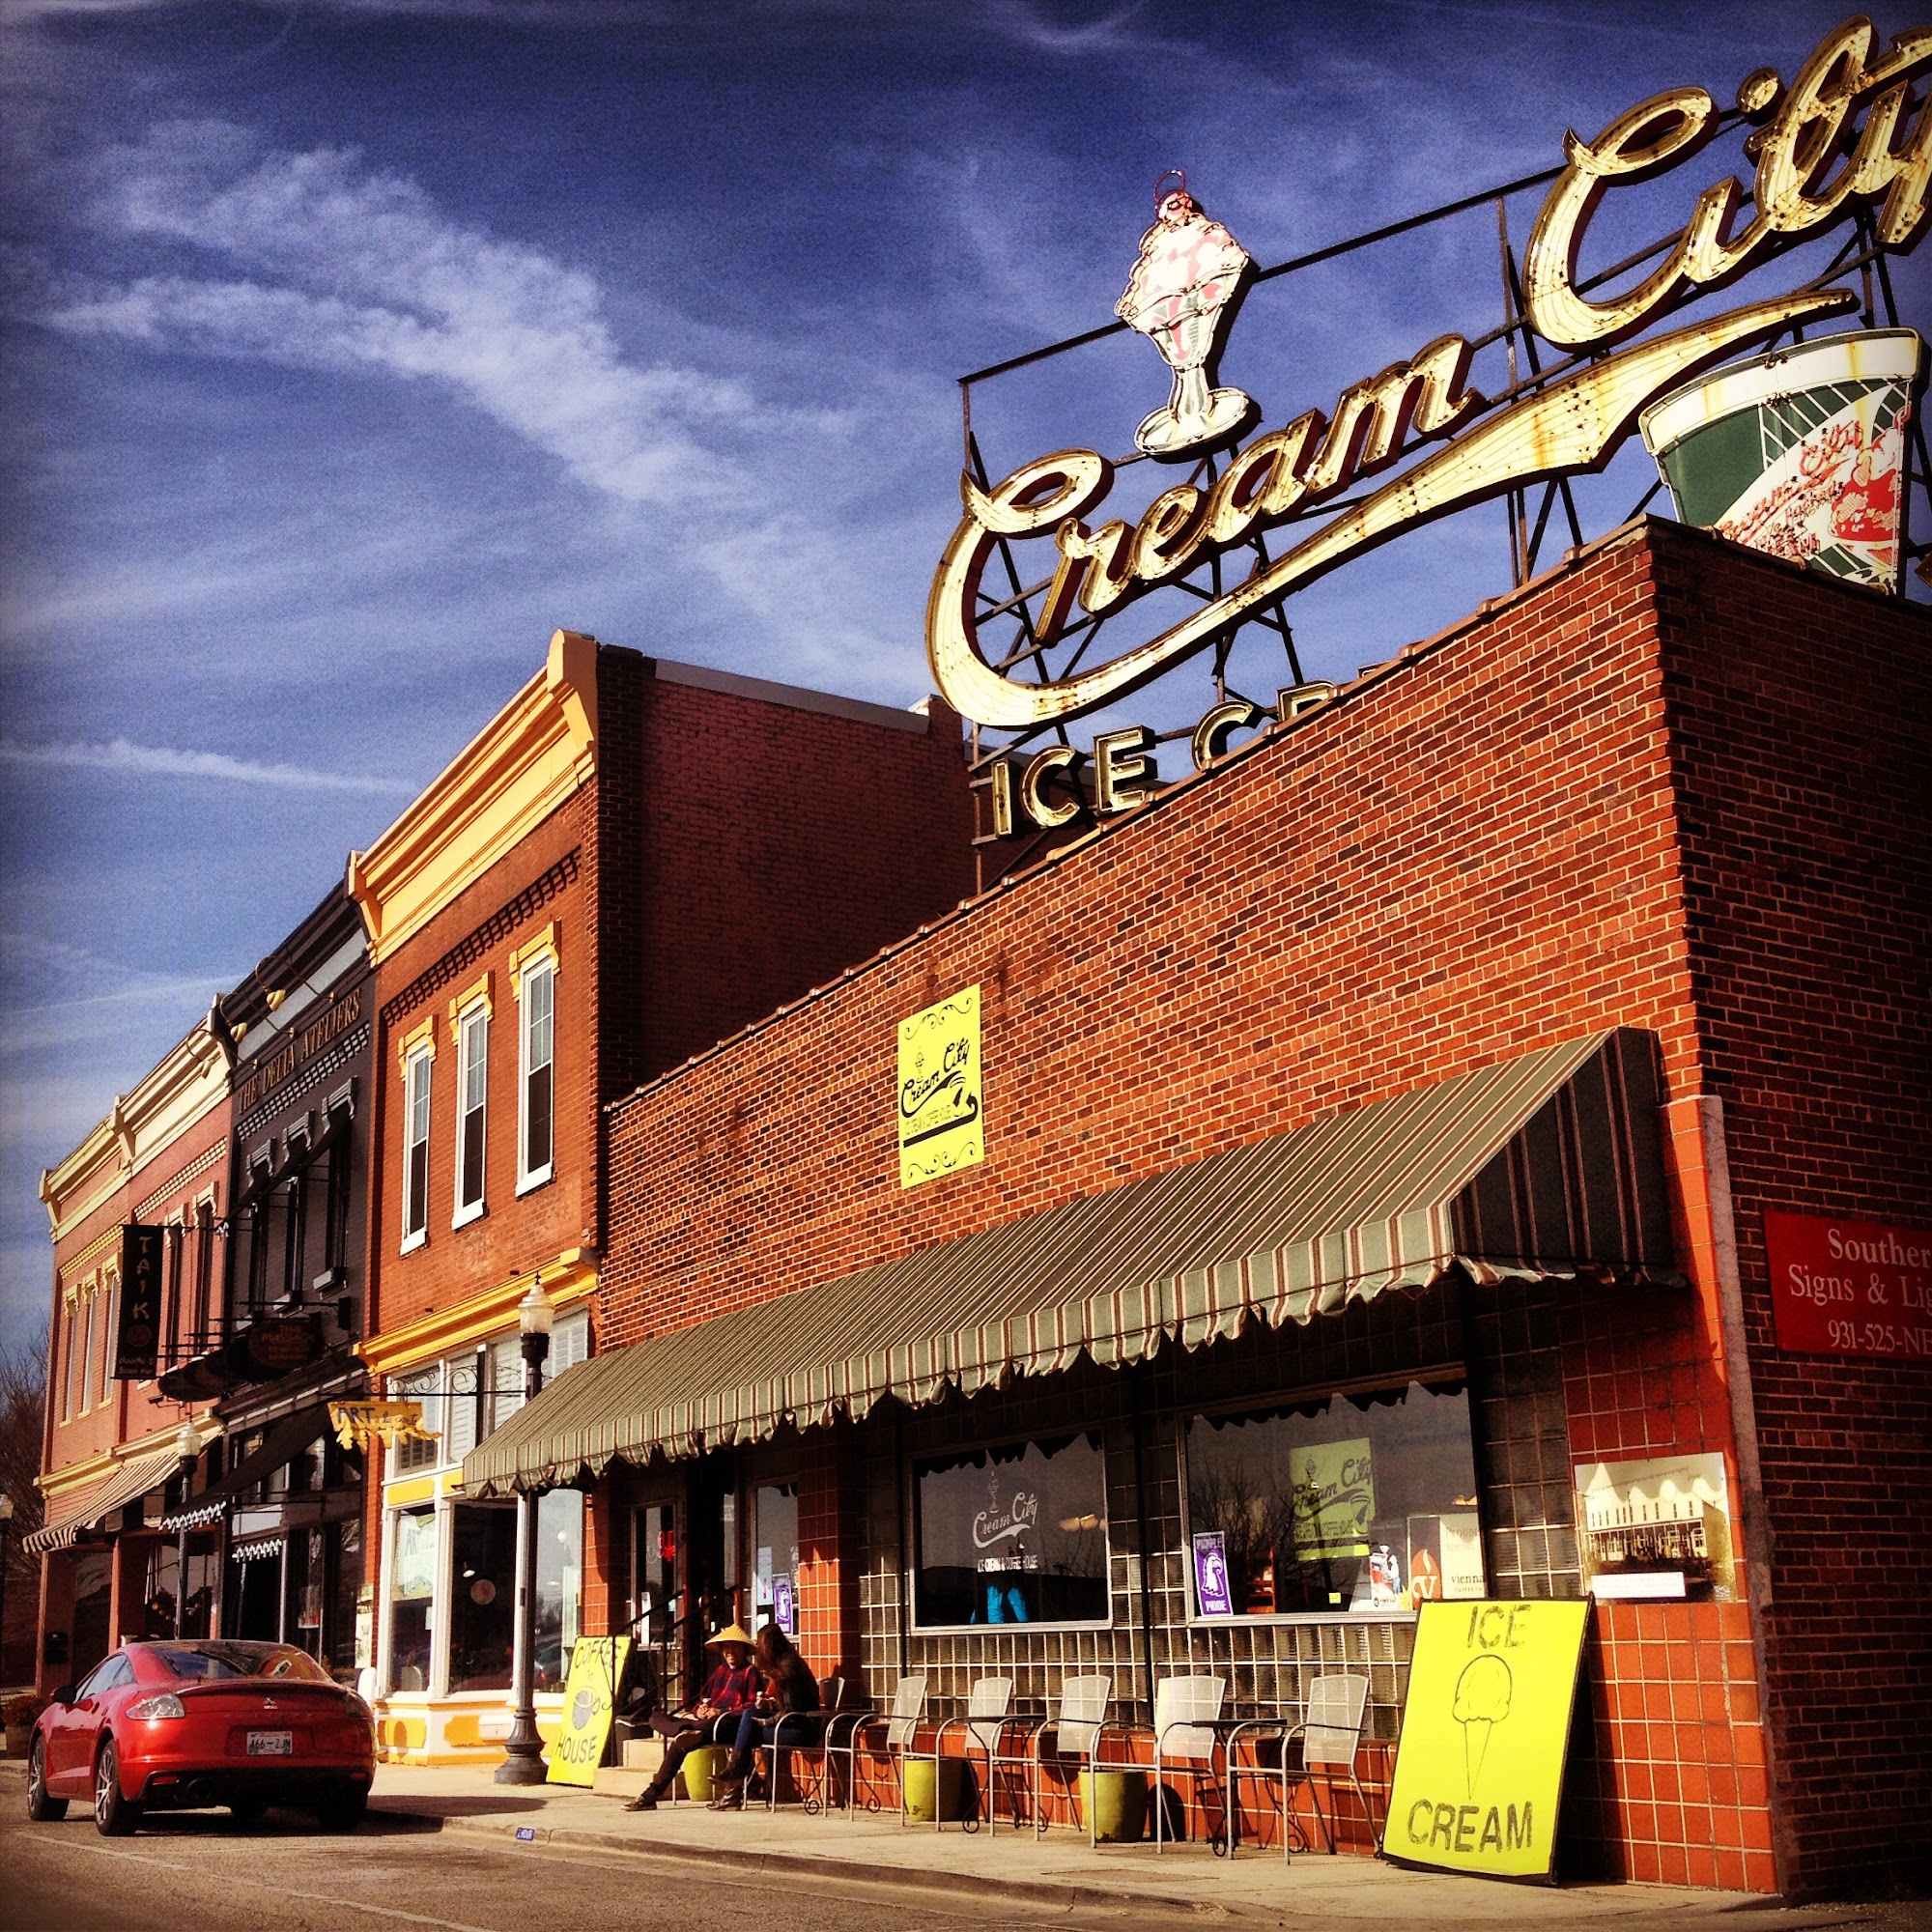 Cream City Ice Cream & Coffee House